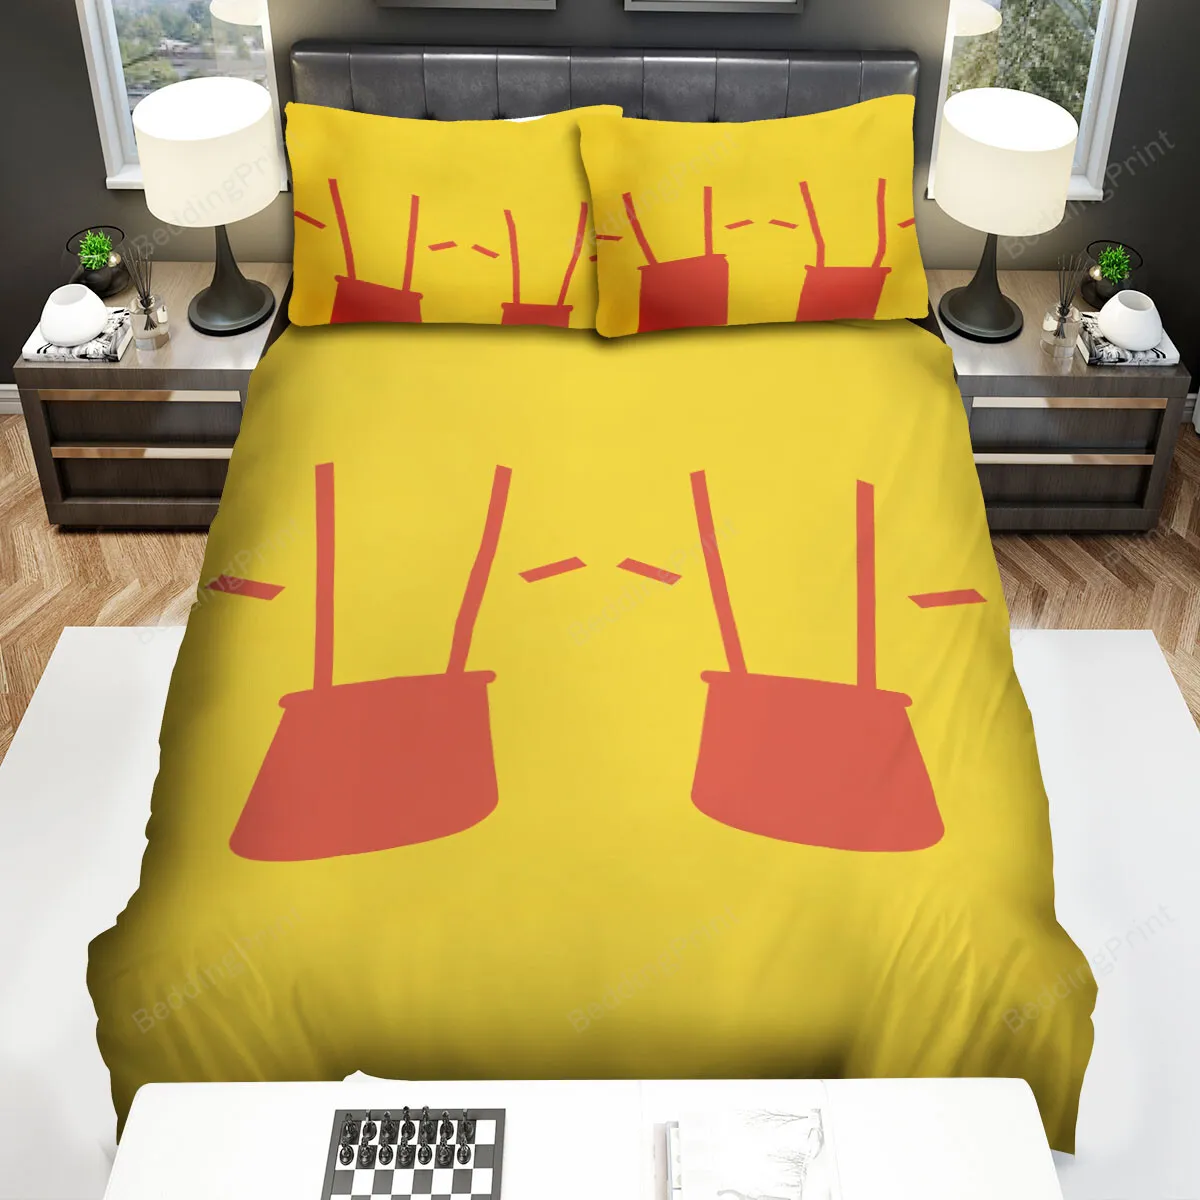 2 Broke Girls (20112017) Movie Illustration 2 Bed Sheets Spread Comforter Duvet Cover Bedding Sets